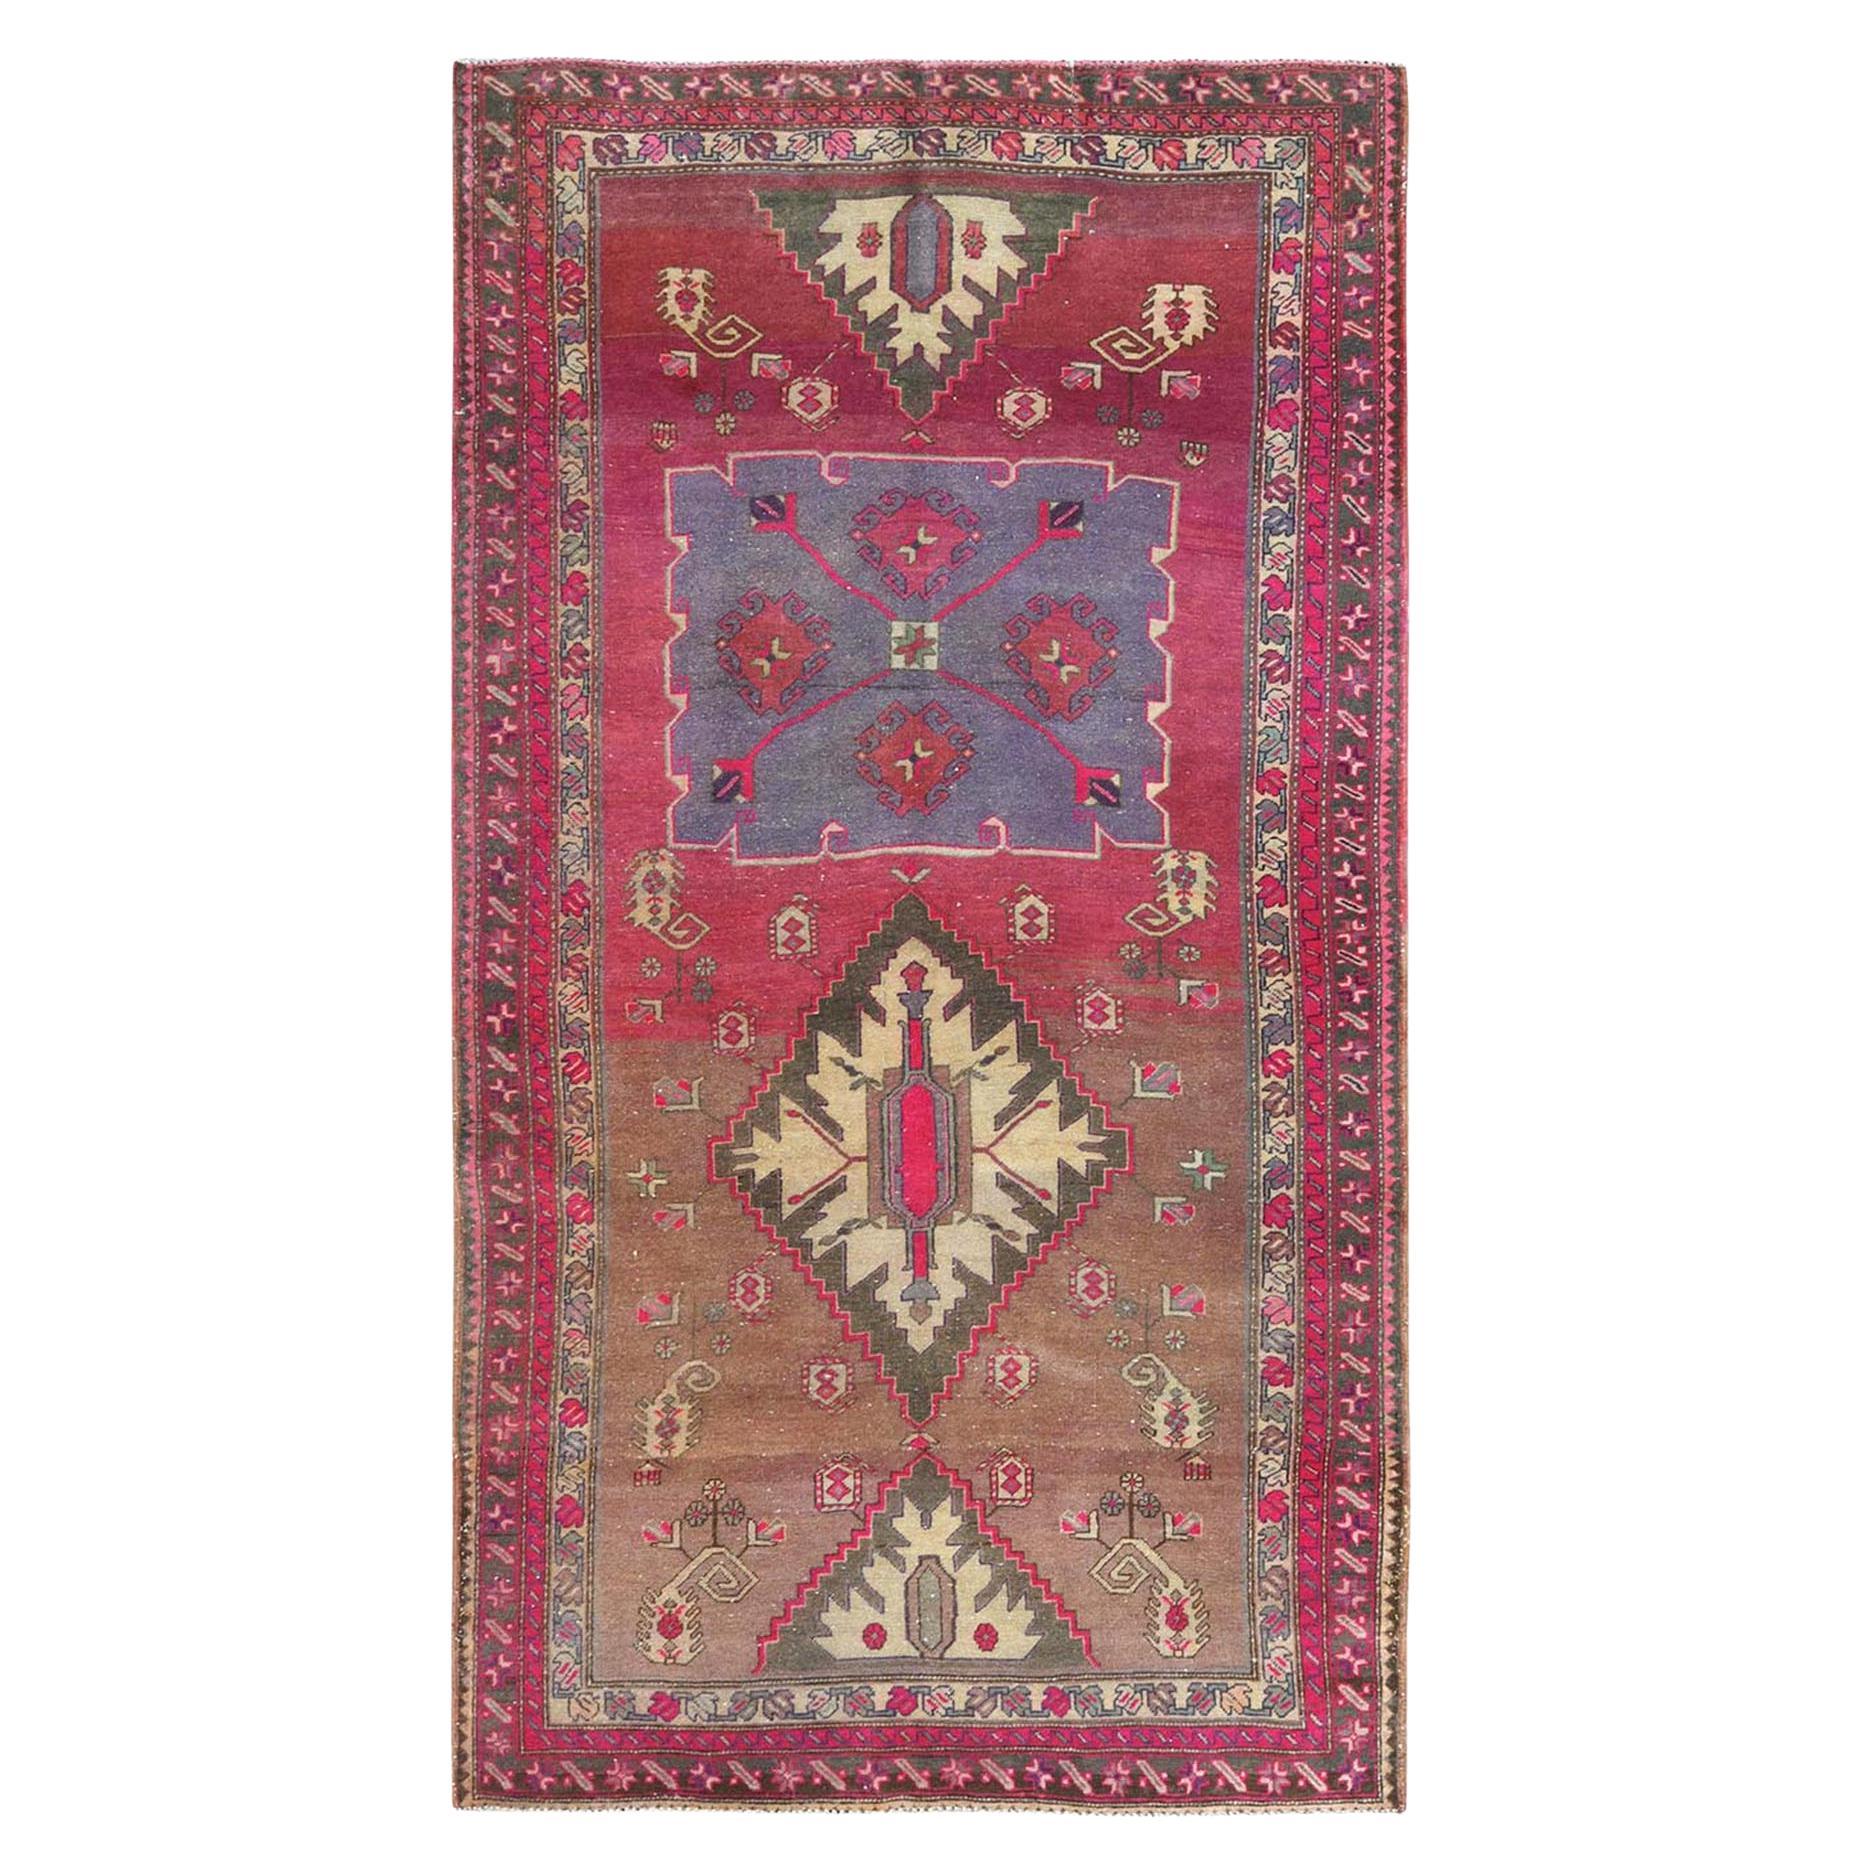 Handgeknüpfter rosafarbener geblümter böhmischer nordwestlicher persischer Abrash-Teppich aus reiner Wolle